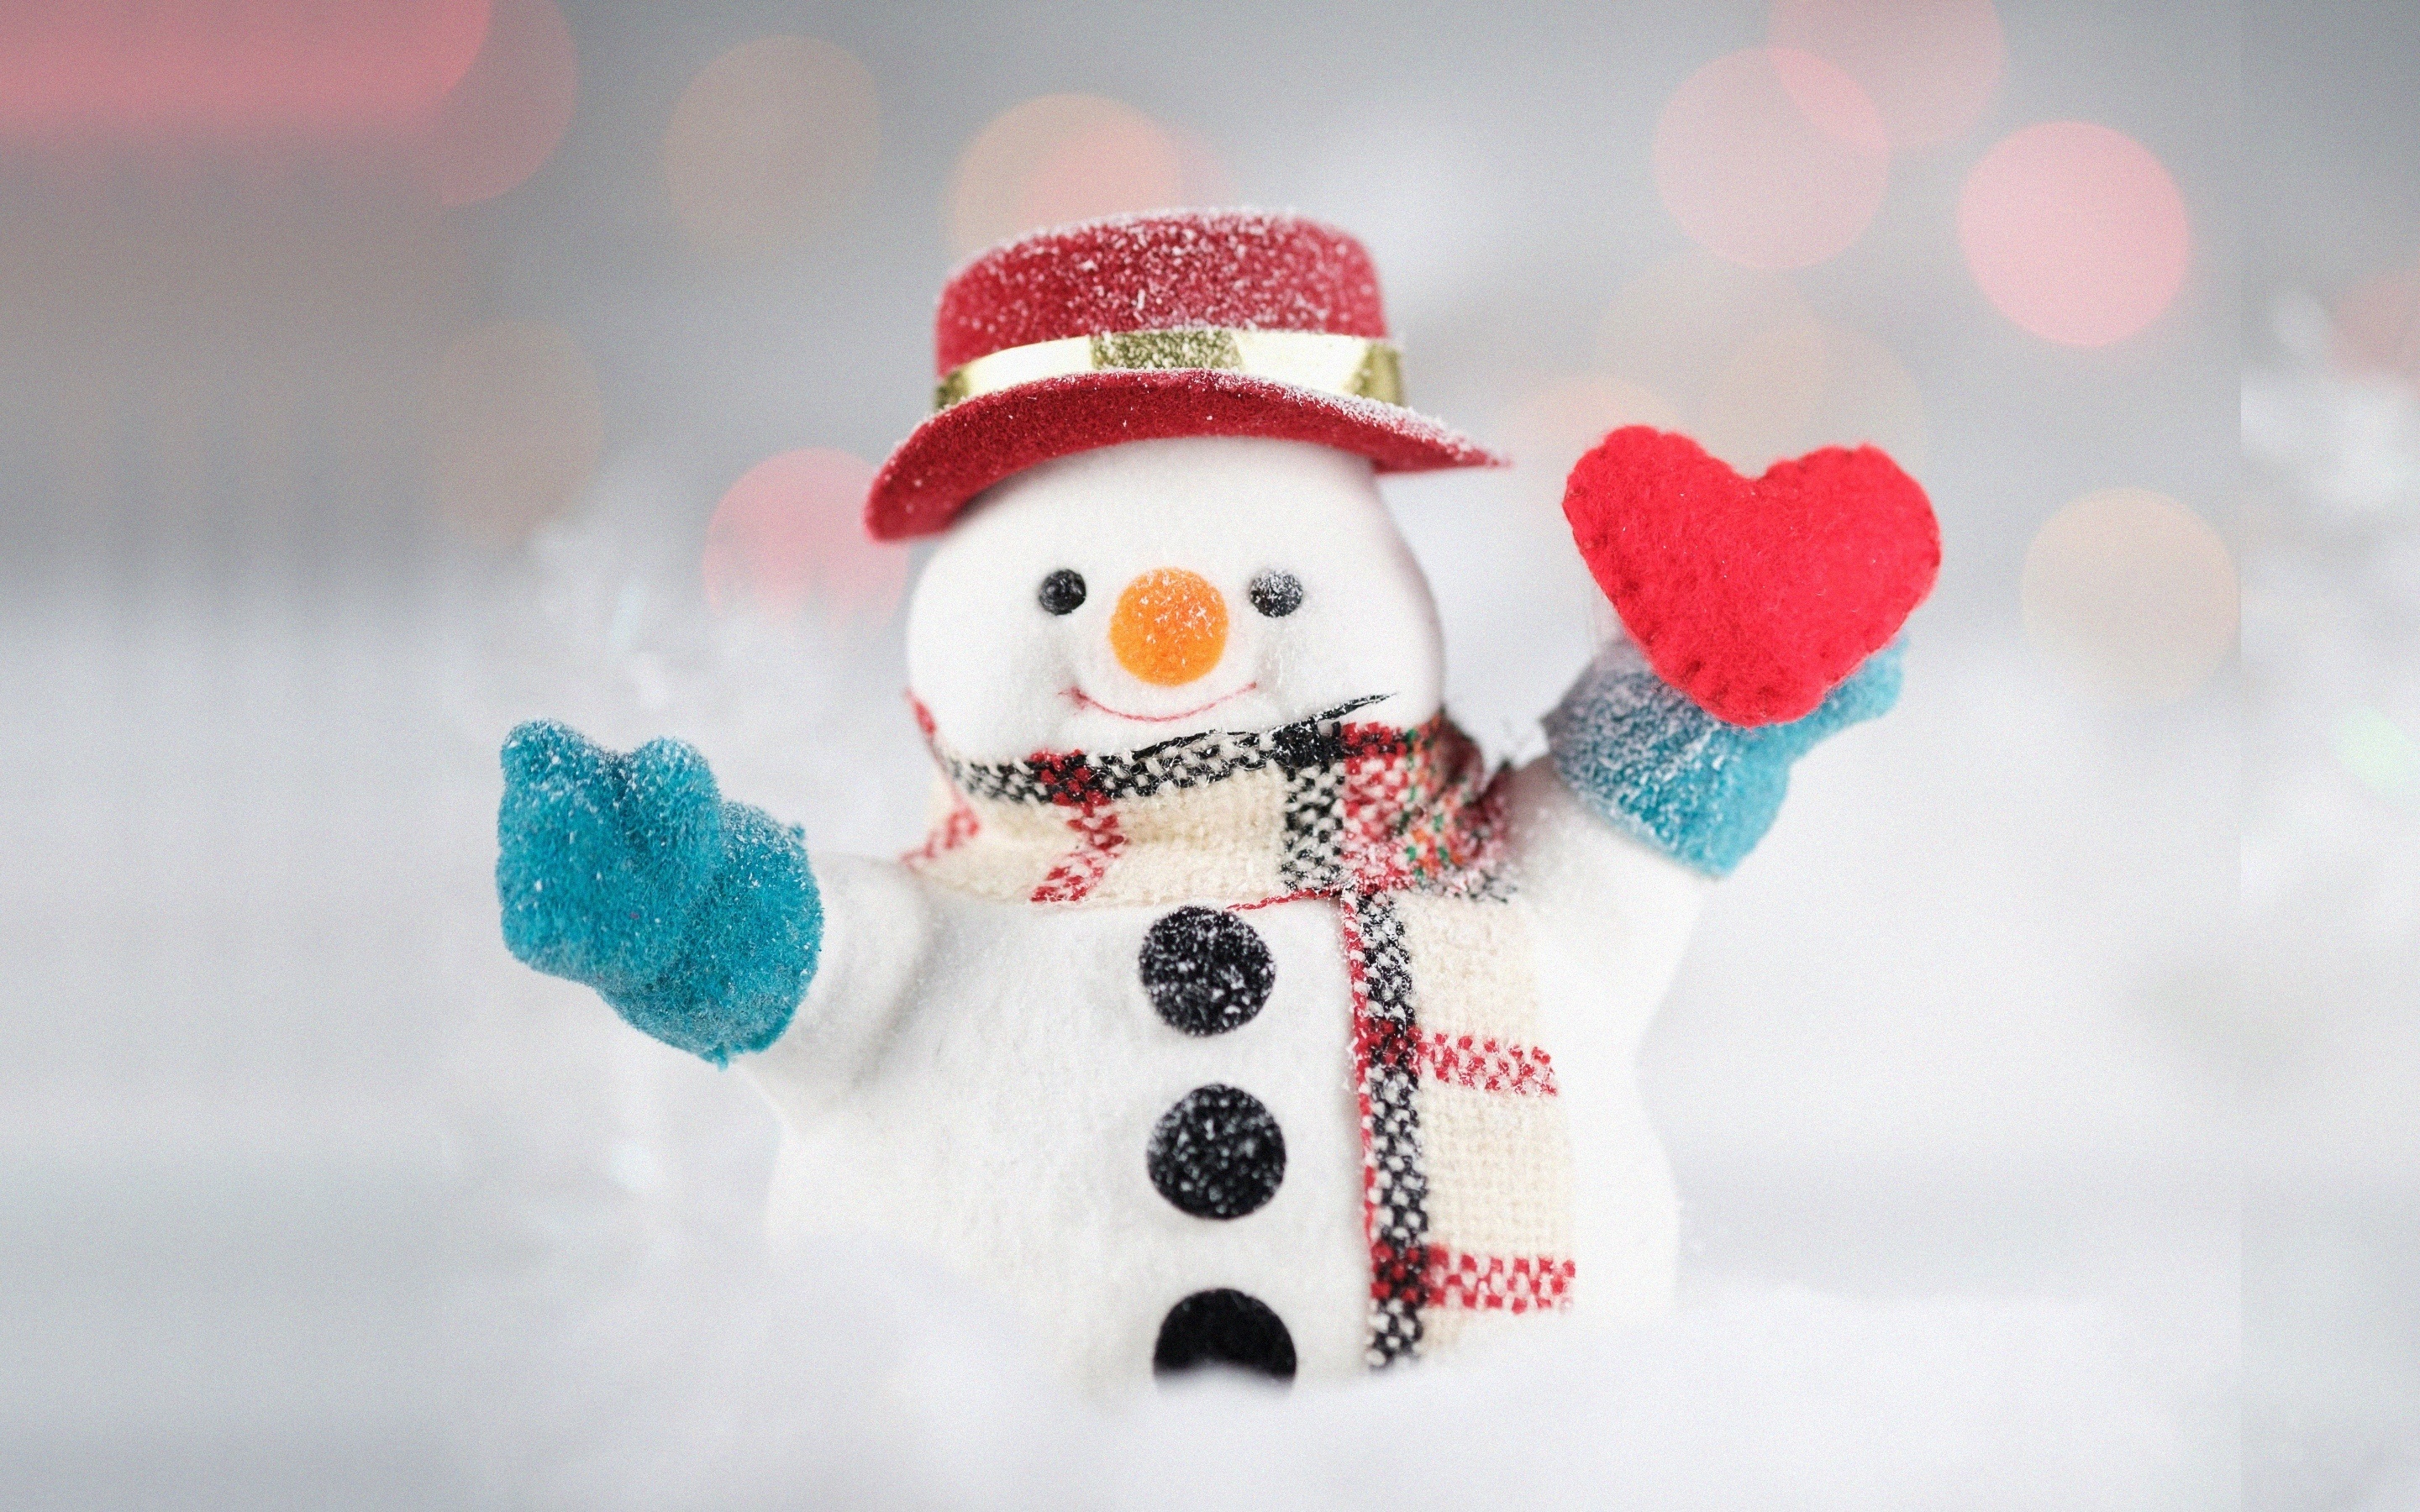 Snowman, cute, snowfall, Christmas, 2880x1800 wallpaper